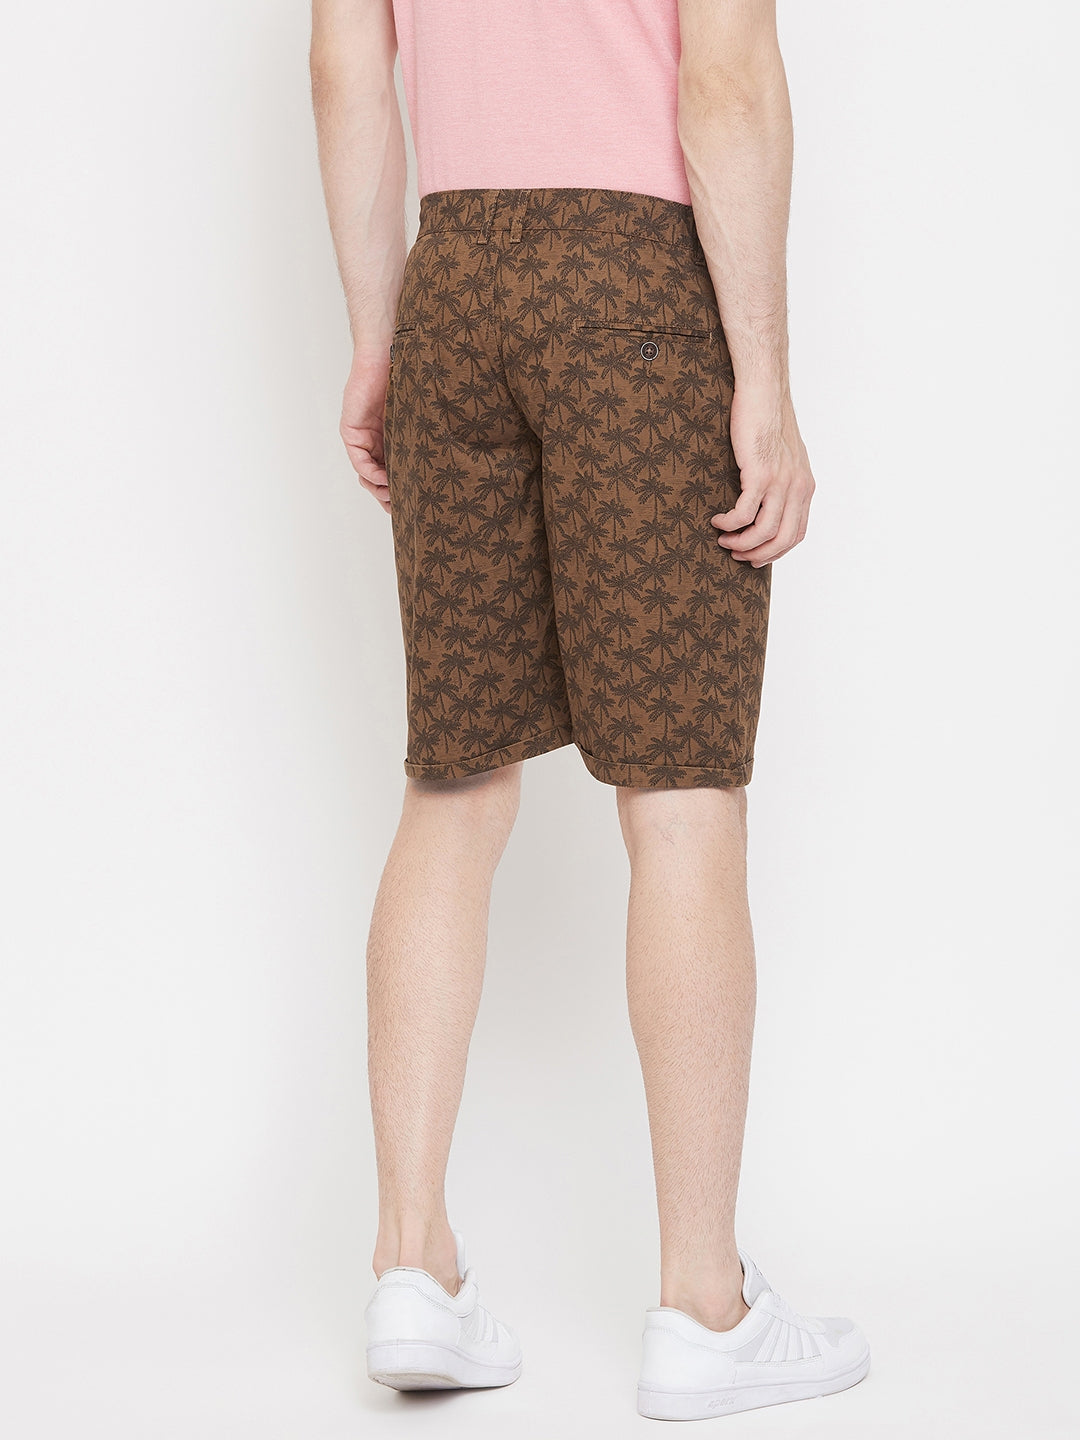 Brown Printed shorts - Men Shorts